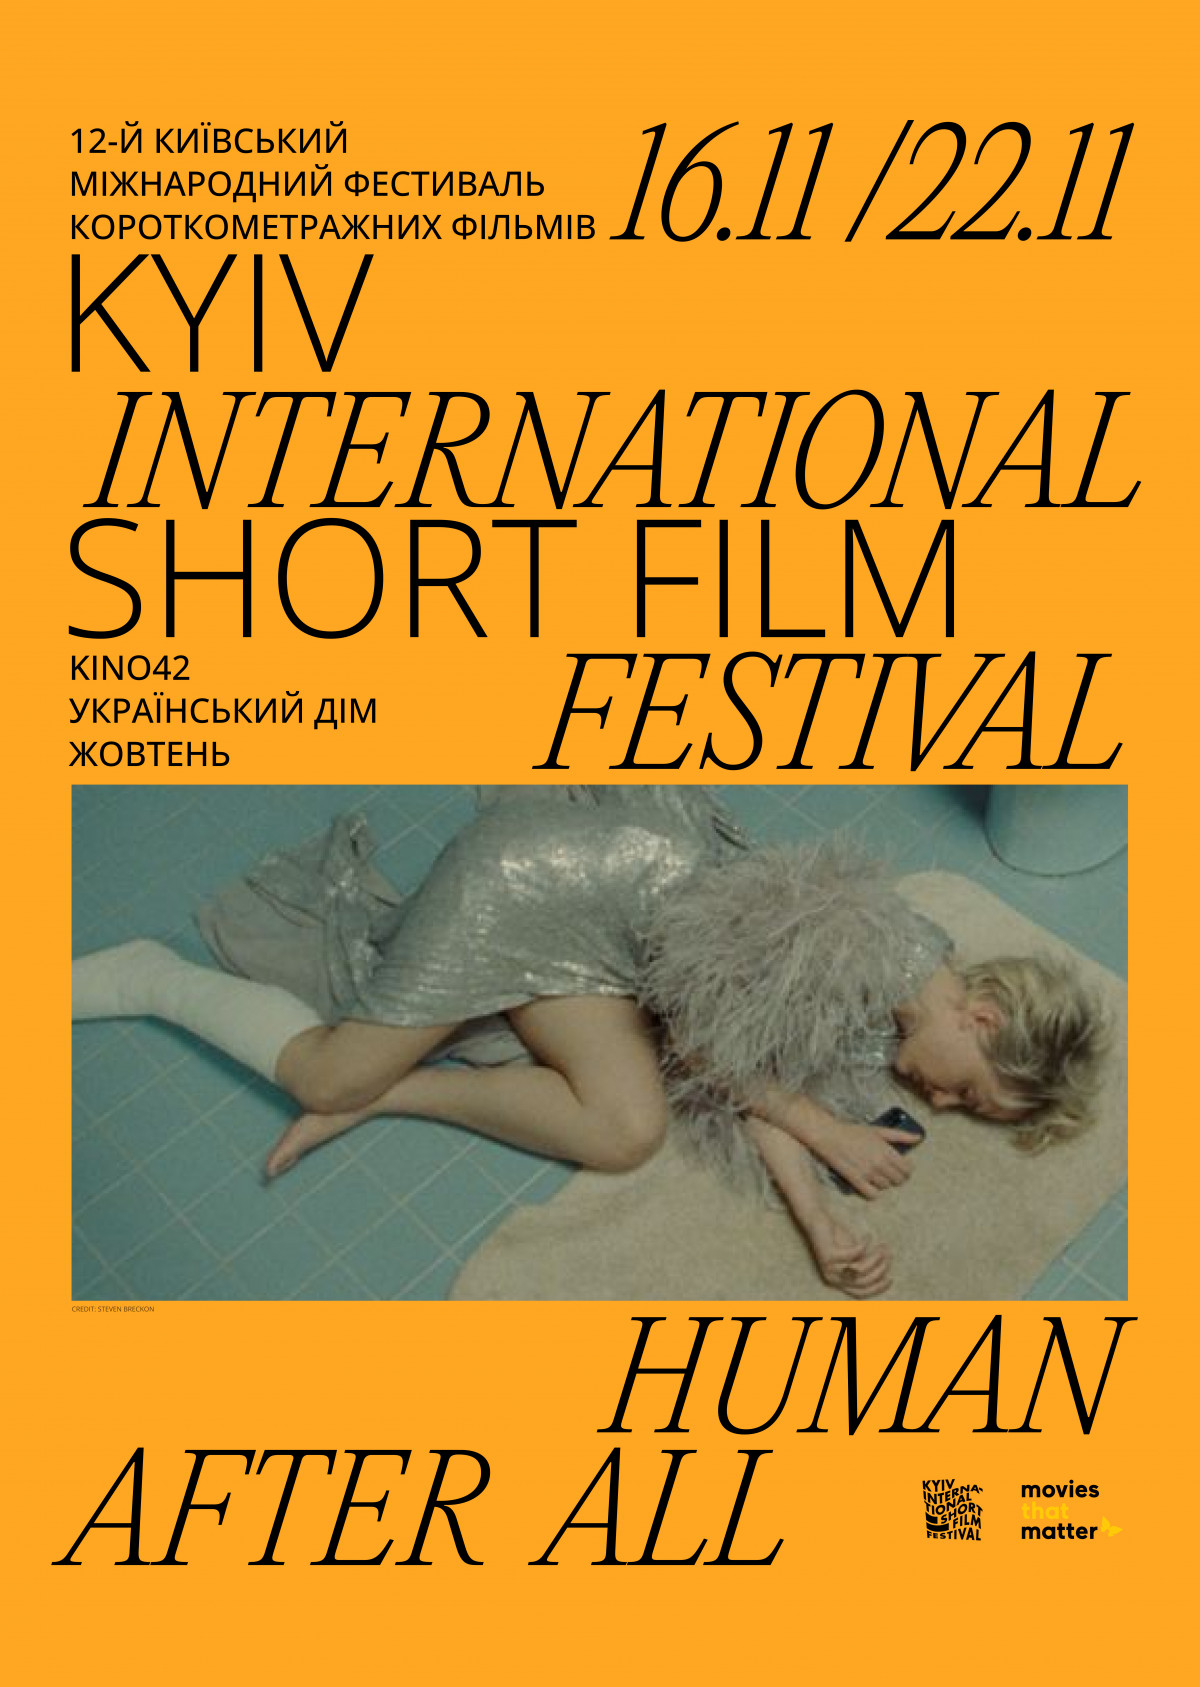 Штучний інтелект, ґендерні питання та ретроспектива Девіда Лінча: що потрібно знати про Київський міжнародний фестиваль короткометражних фільмів KISFF0